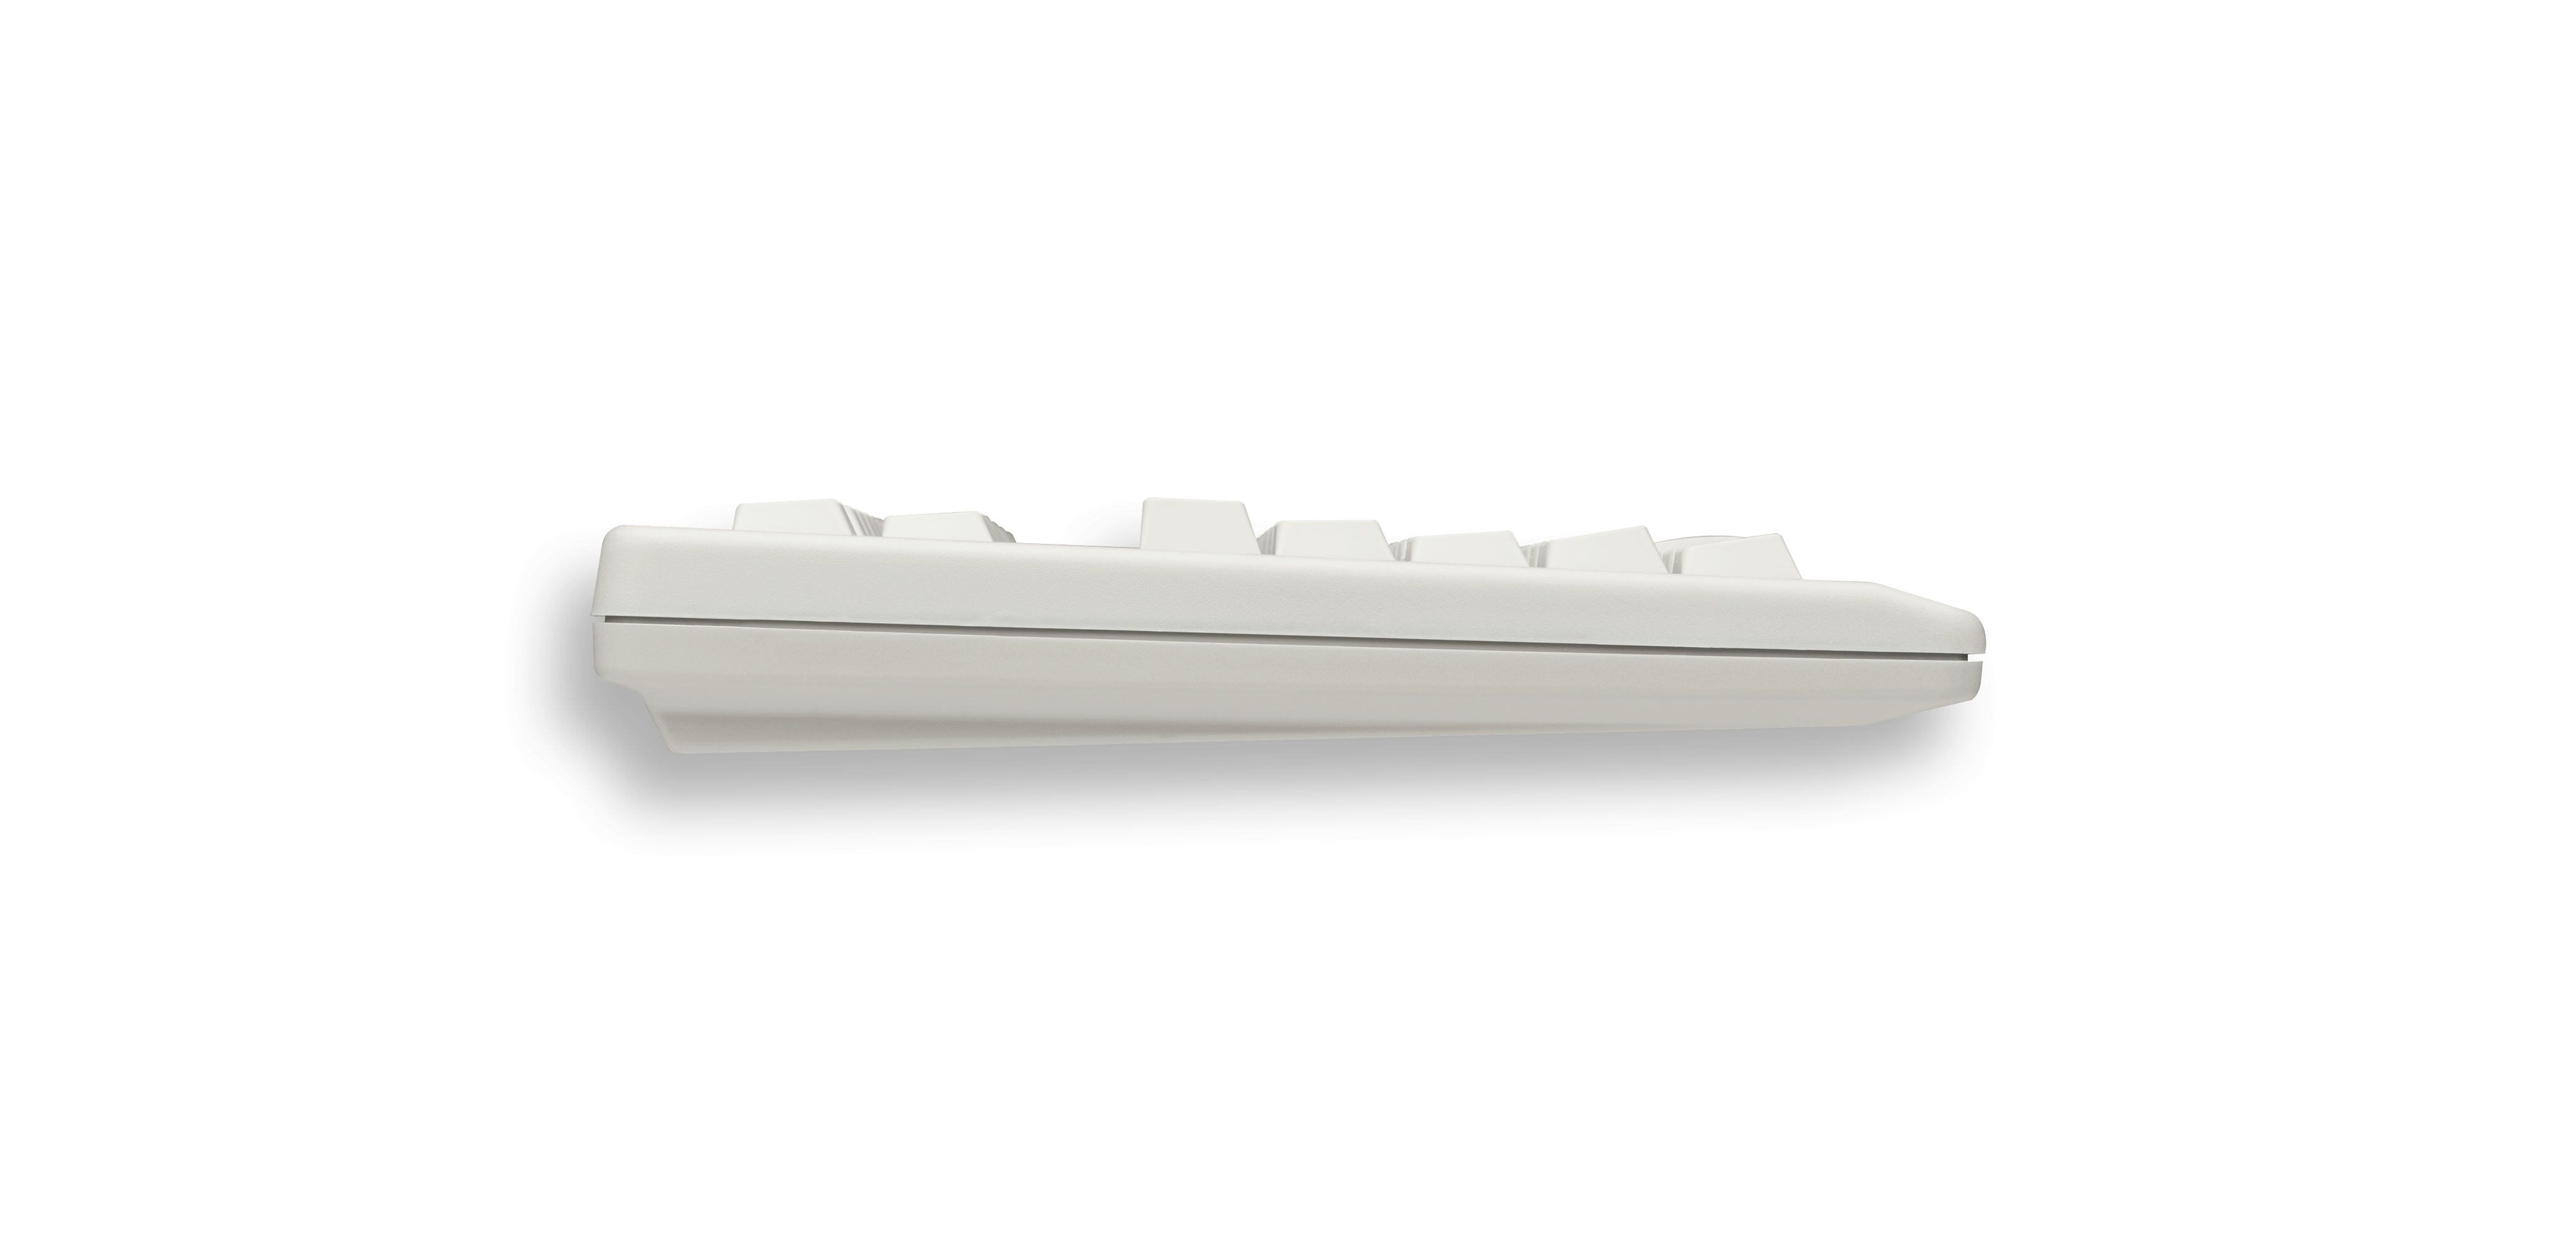 Cherry Tastatur (G80-11900LUMDE-0) TouchBoard, weiß